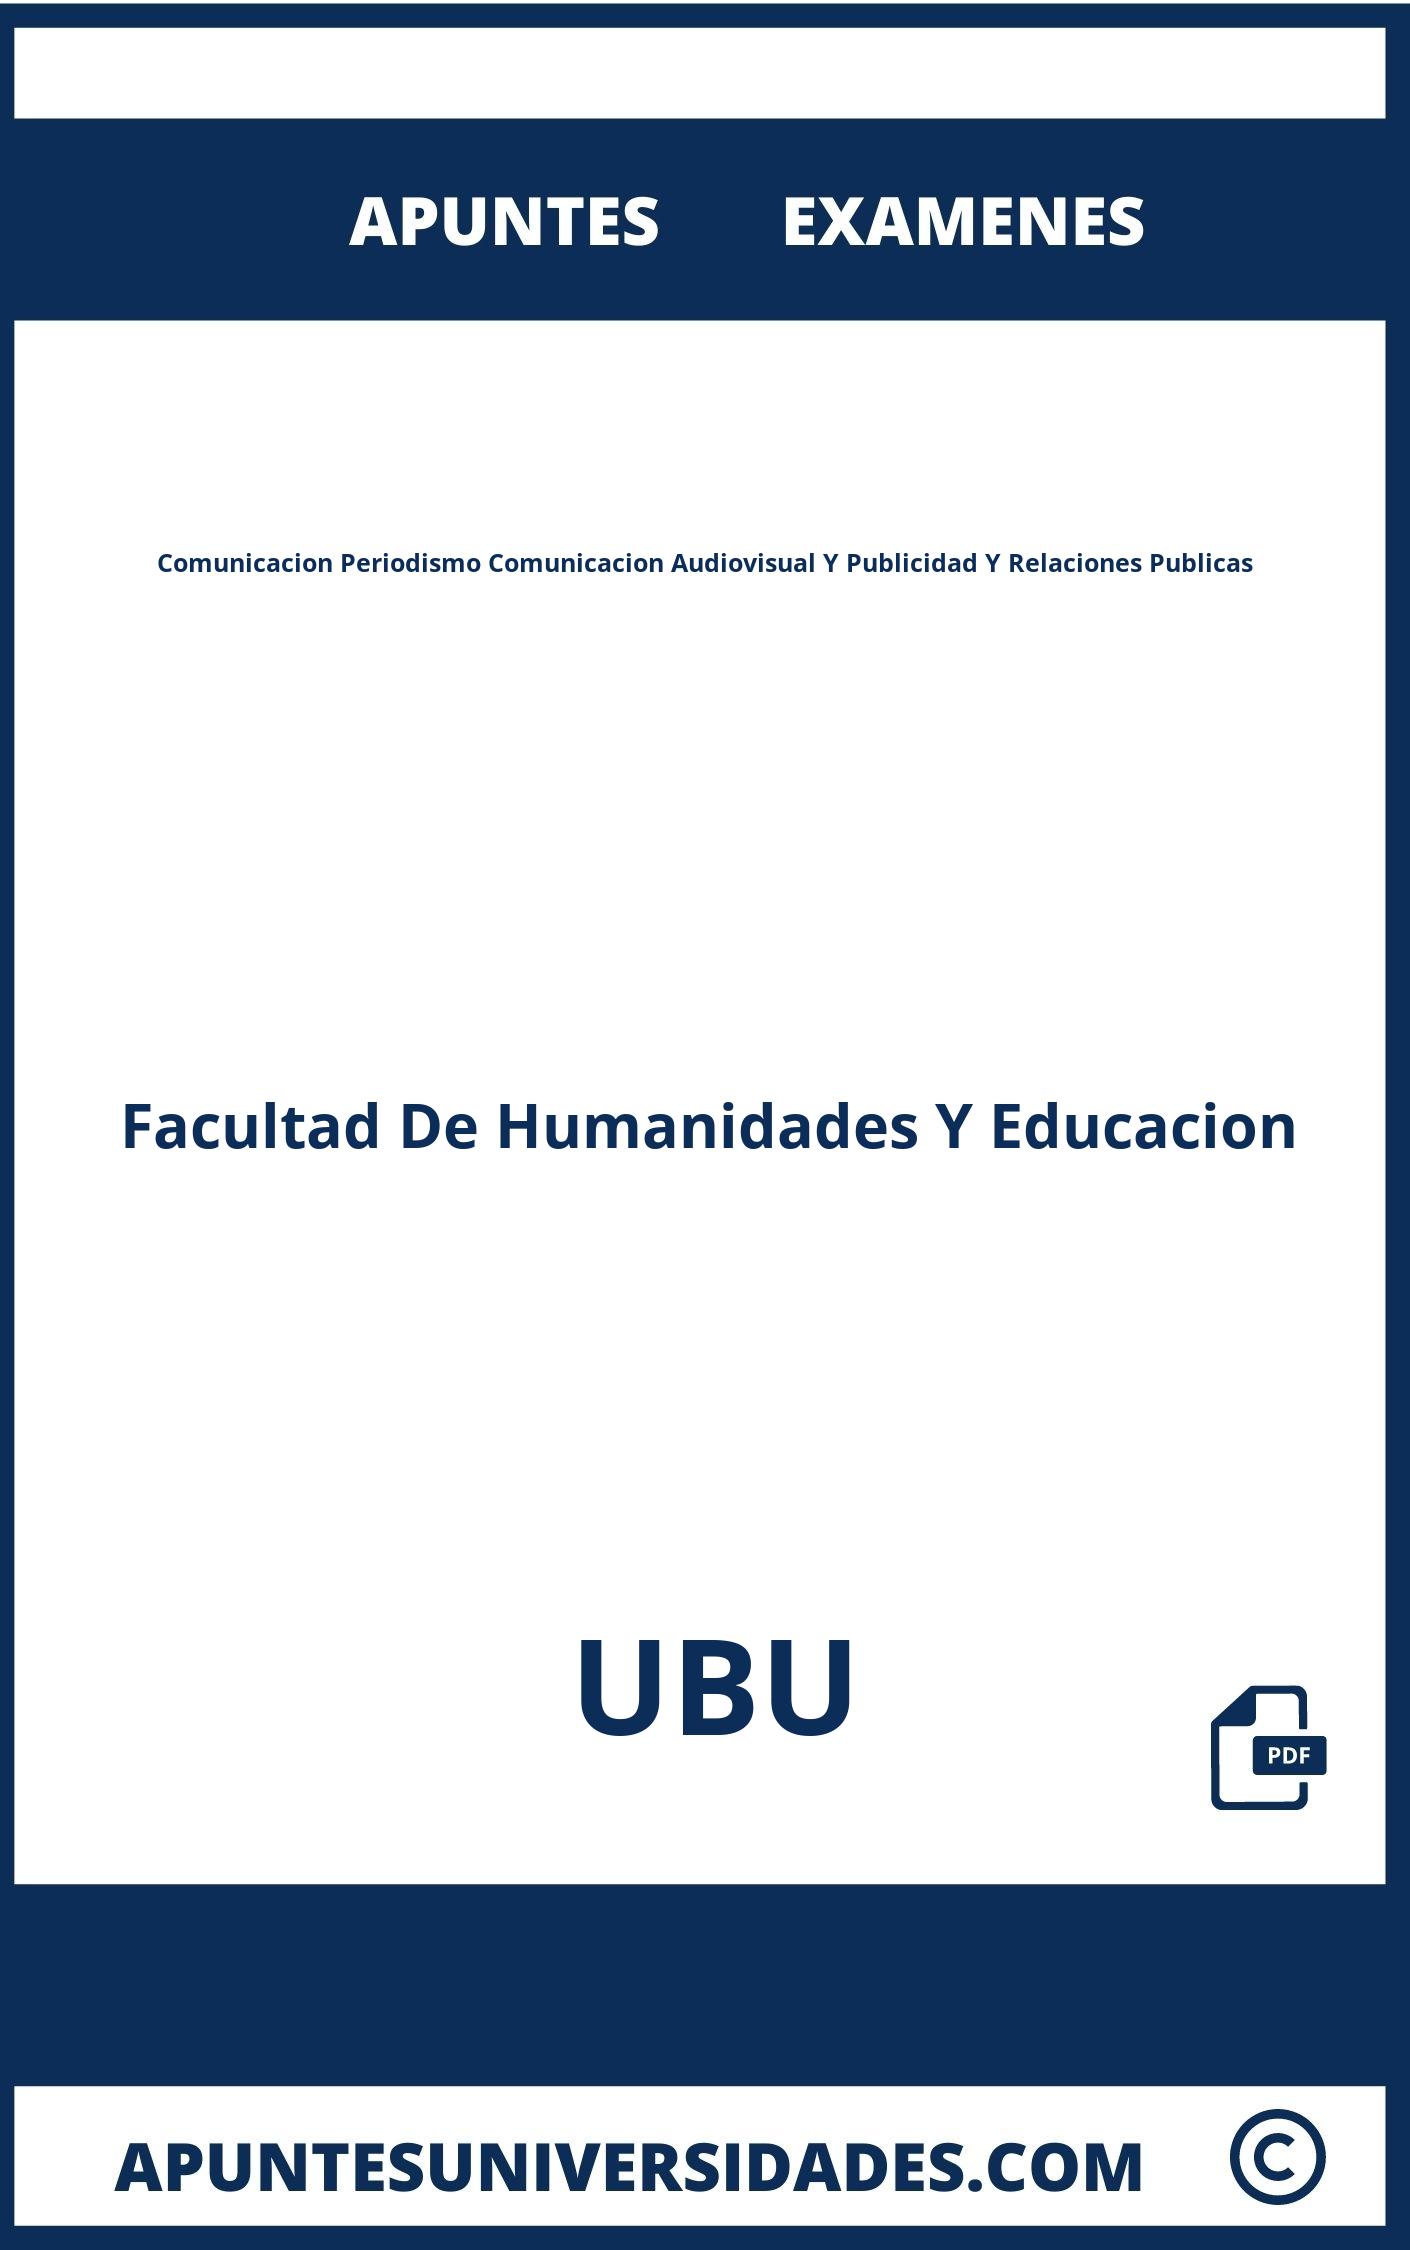 Apuntes y Examenes de Comunicacion Periodismo Comunicacion Audiovisual Y Publicidad Y Relaciones Publicas UBU